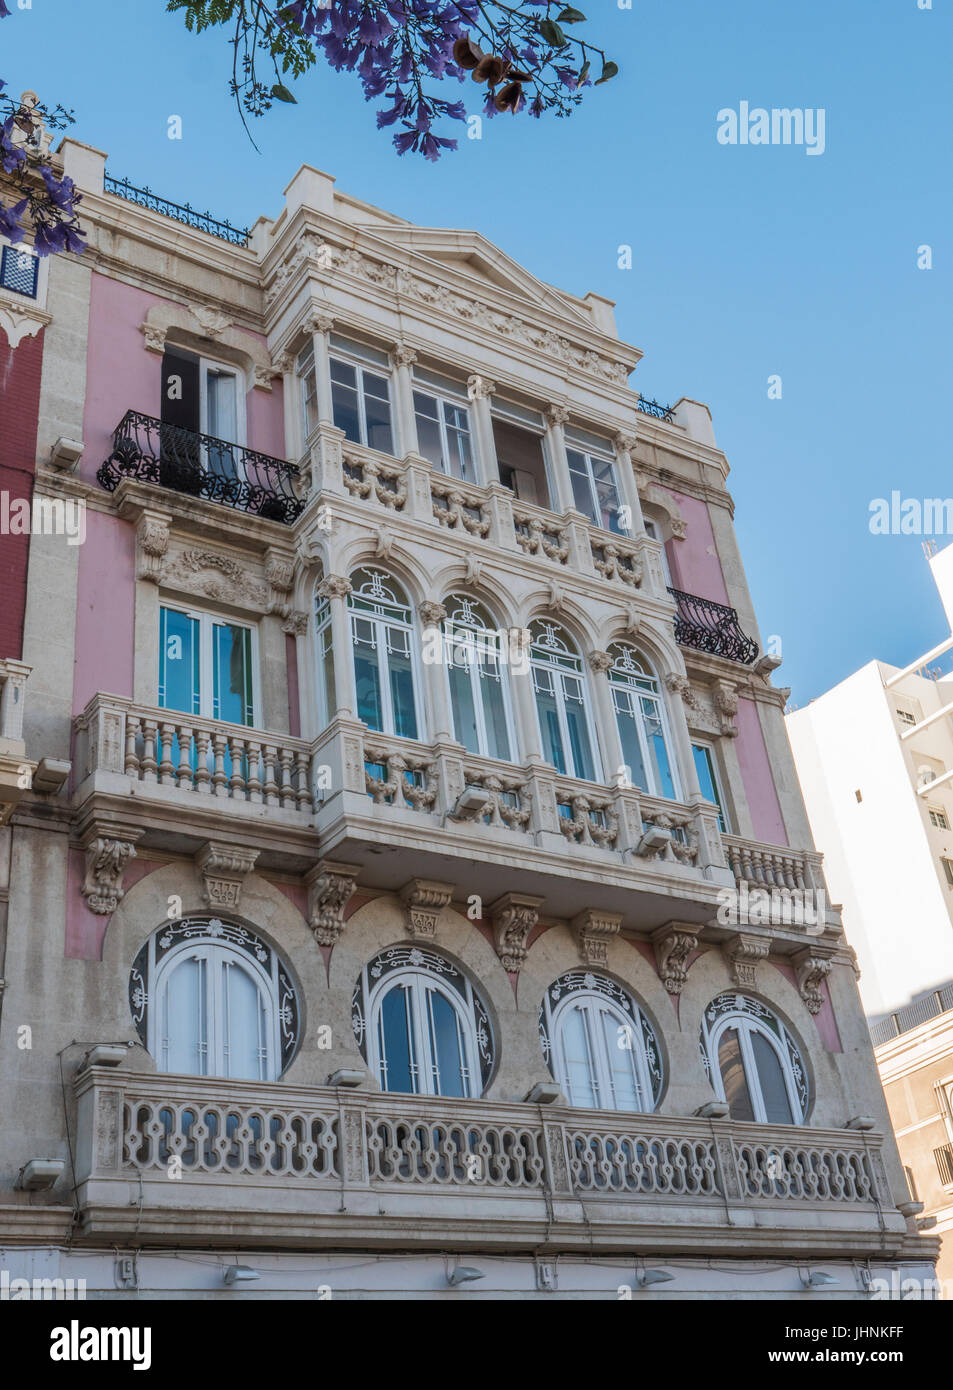 Détail d'un balcon décoré typique style néoclassique, Almeria, Andalousie, Espagne Banque D'Images